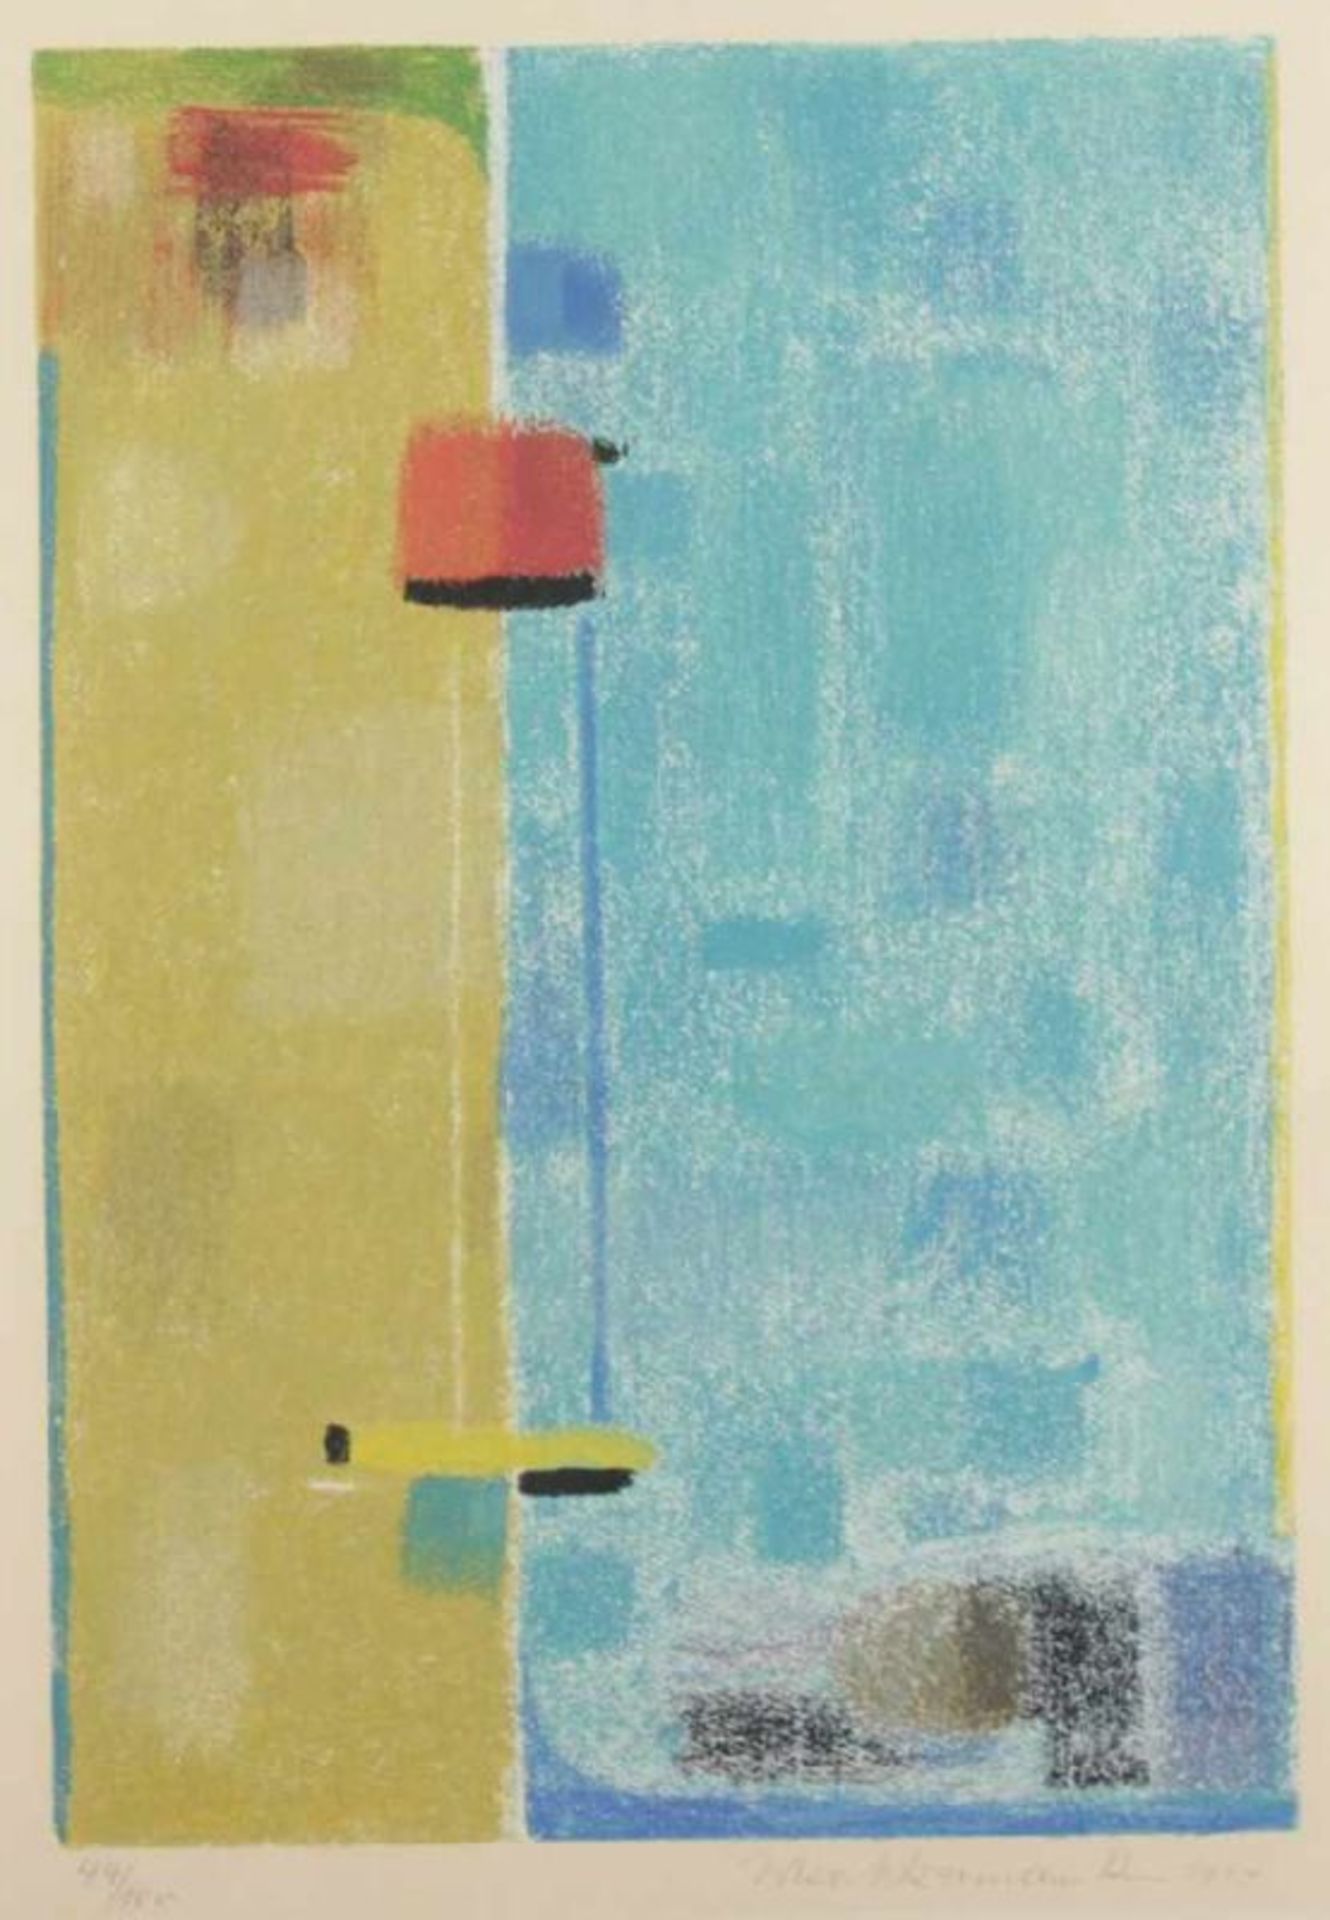 ACKERMANN, Max, "Türkis-Sand", Farbserigrafie, 50 x 35, nummeriert 44/100, handsigniert, aus dem